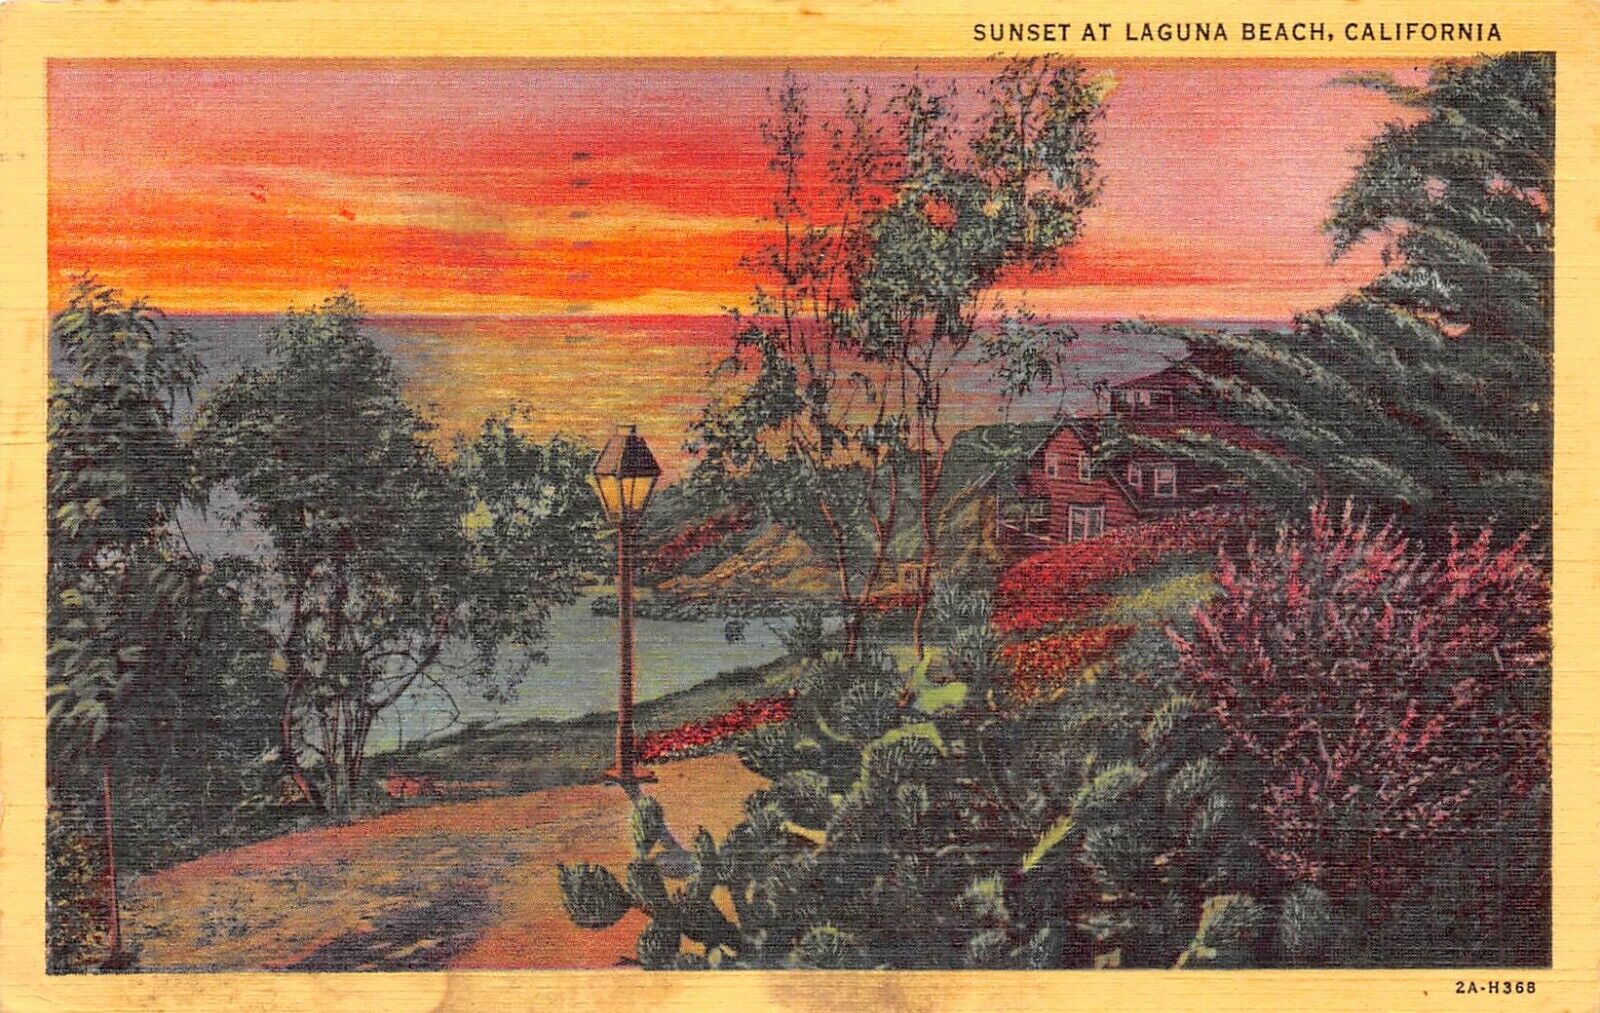 D1842 Sunset at Laguna Beach, CA - 1932 Teich Linen Postcard No. 2A-H368